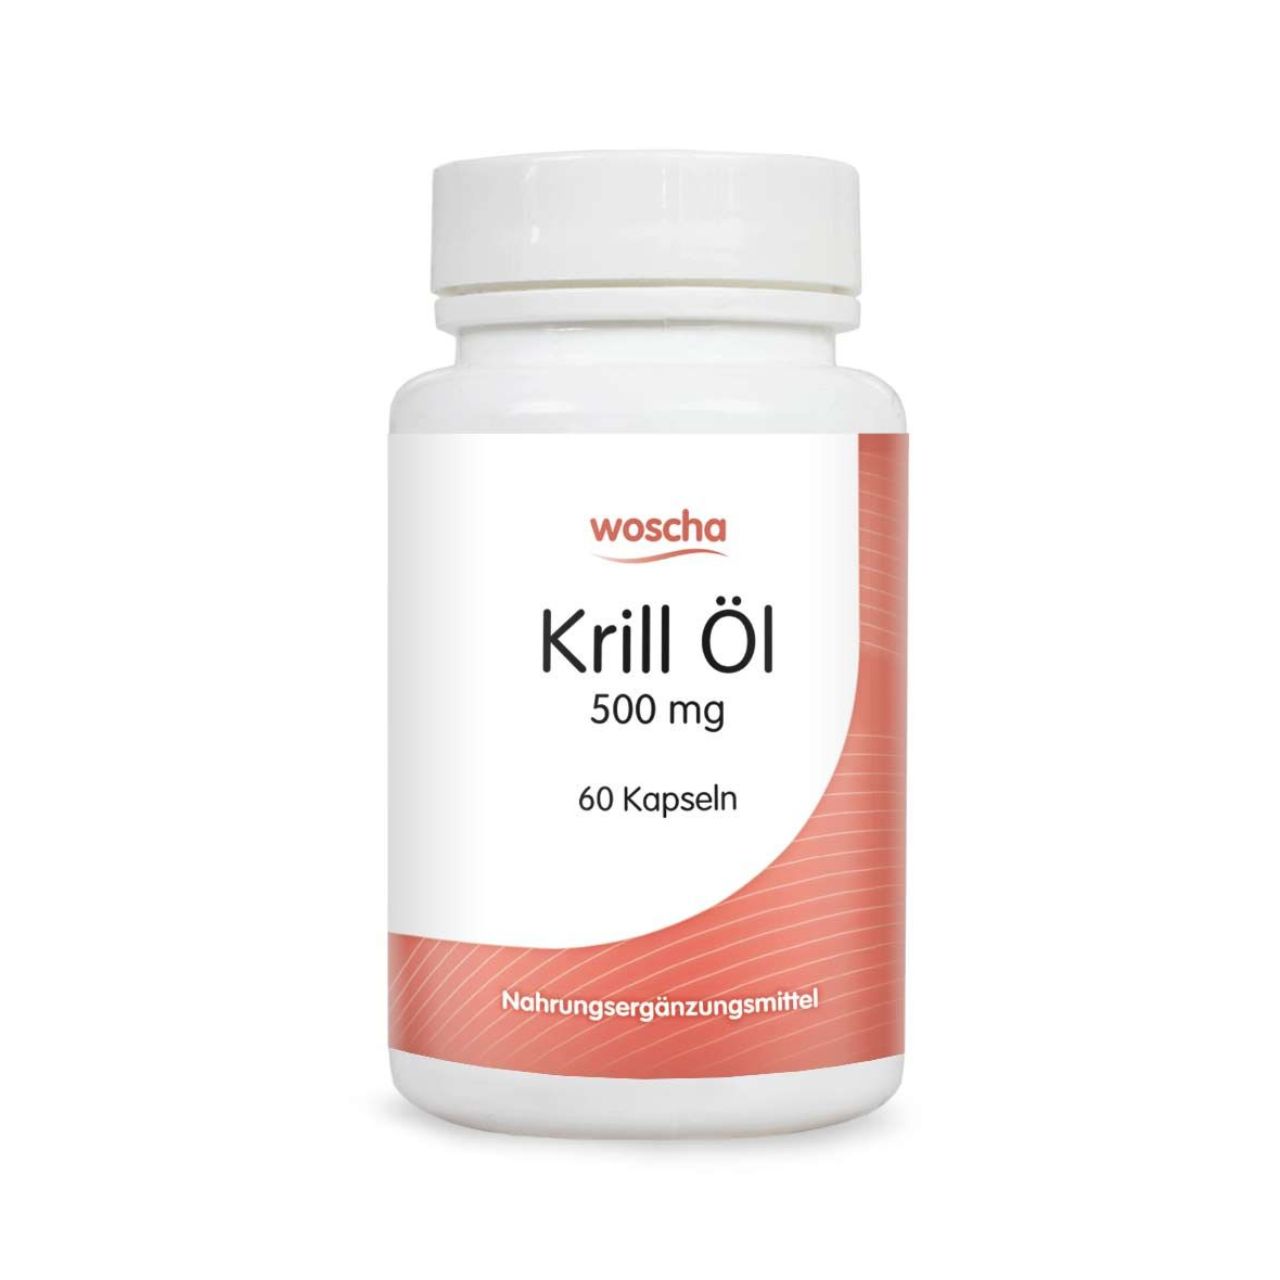 Woscha Krill Öl von podo medi beinhaltet 60 Kapseln je 500 Milligramm